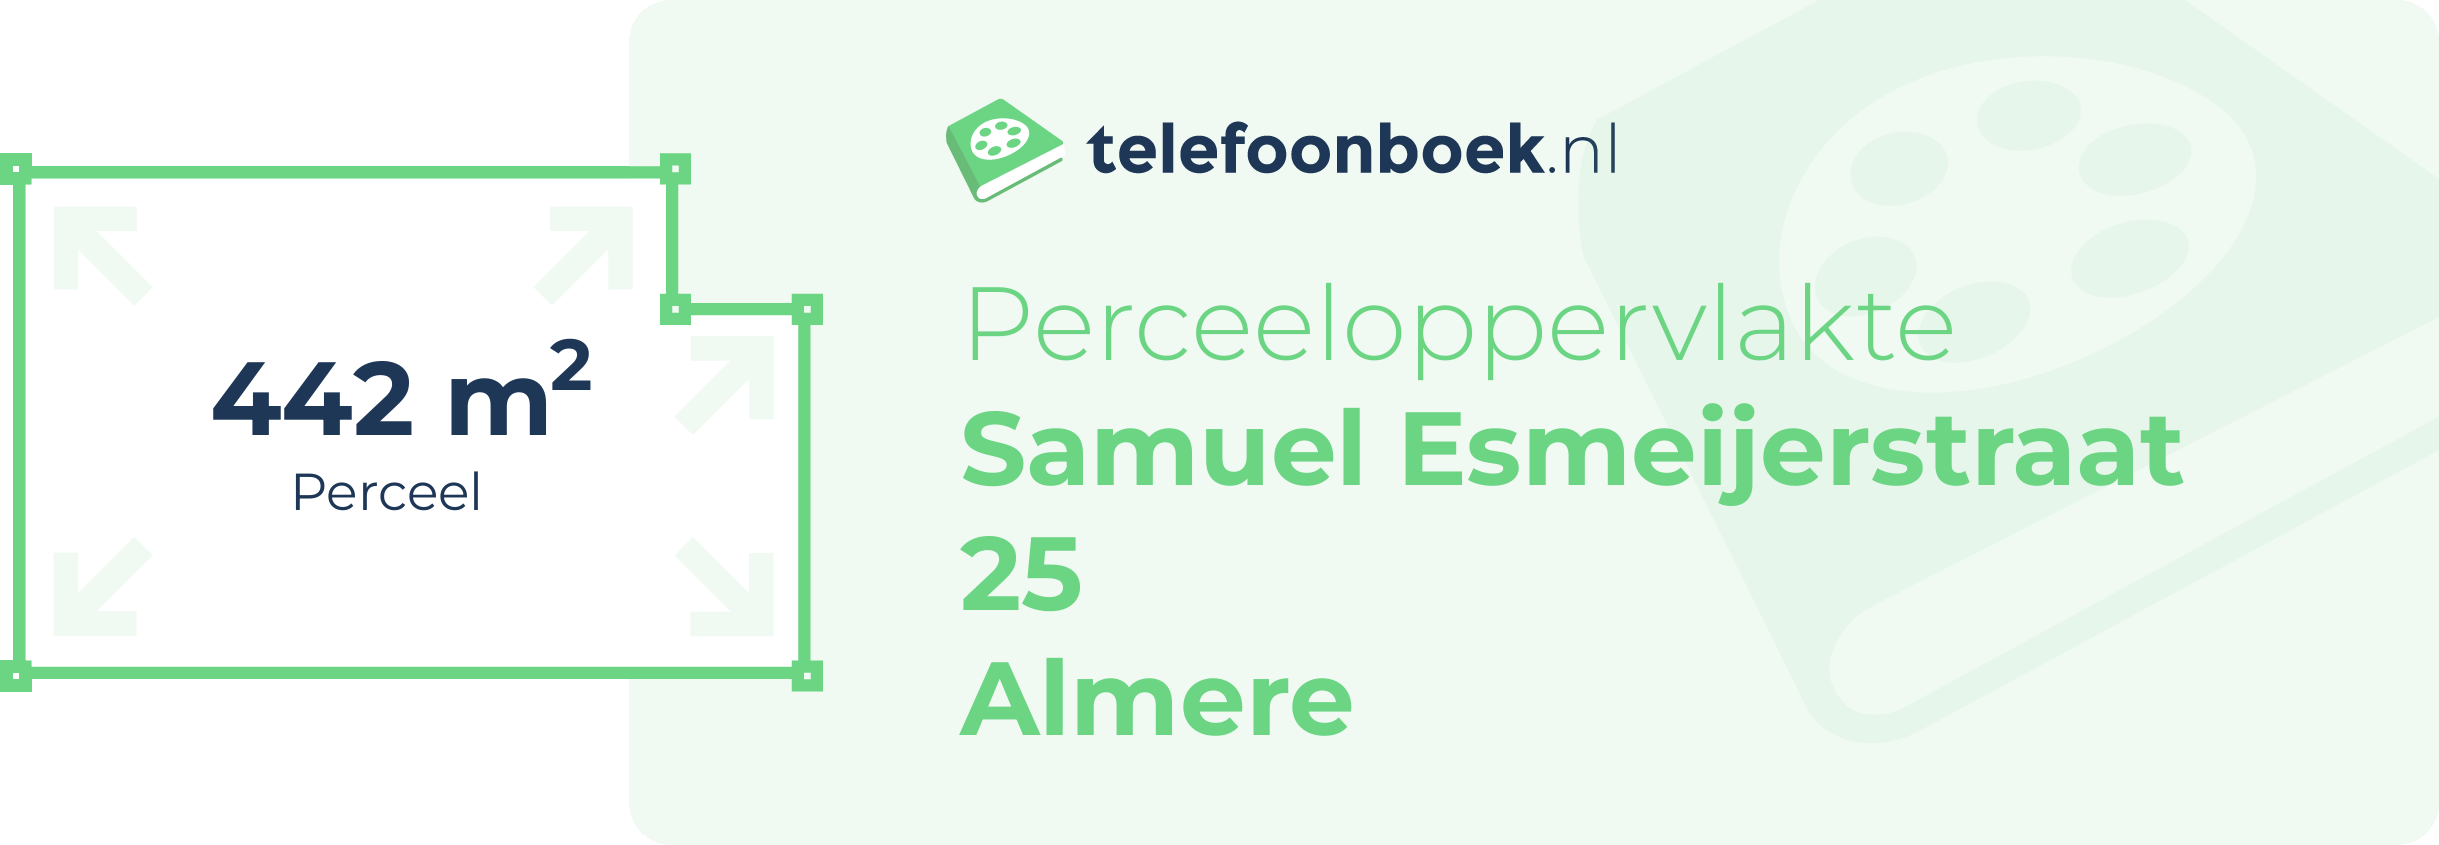 Perceeloppervlakte Samuel Esmeijerstraat 25 Almere